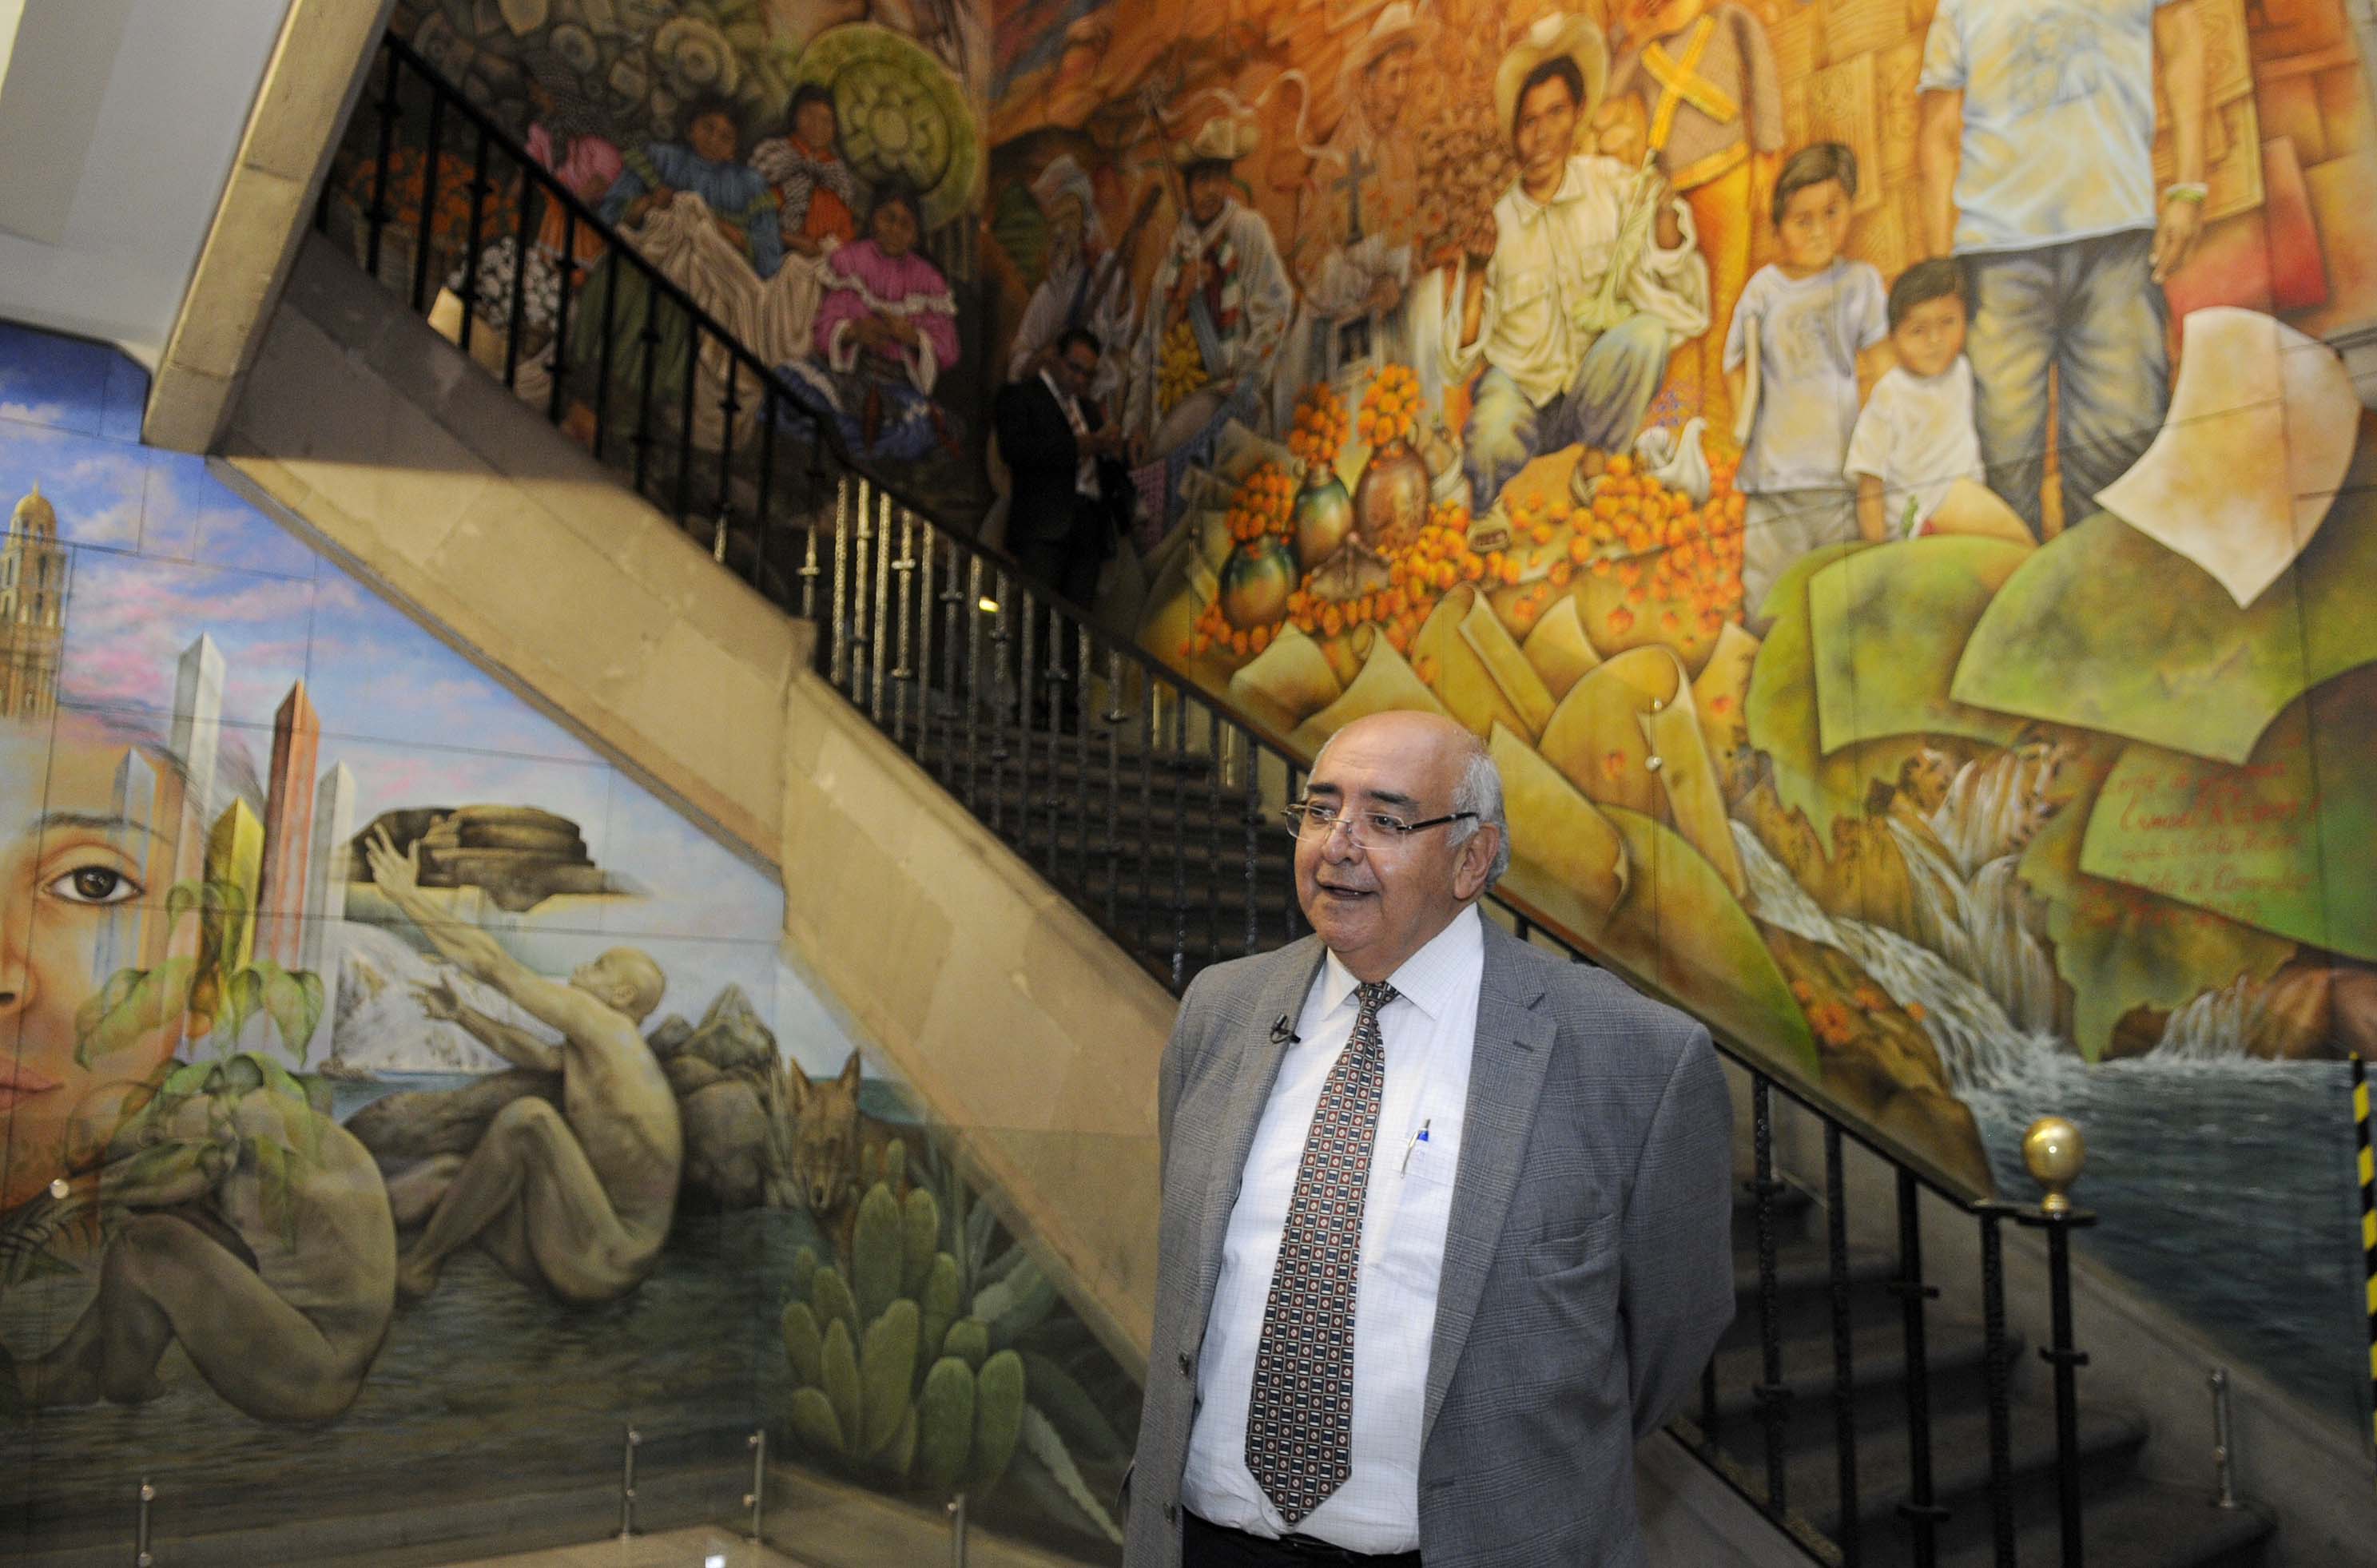 Maestros de la plástica mexicana plasmaron su arte en los murales del Palacio de Gobierno del EdoMéx #regionmx